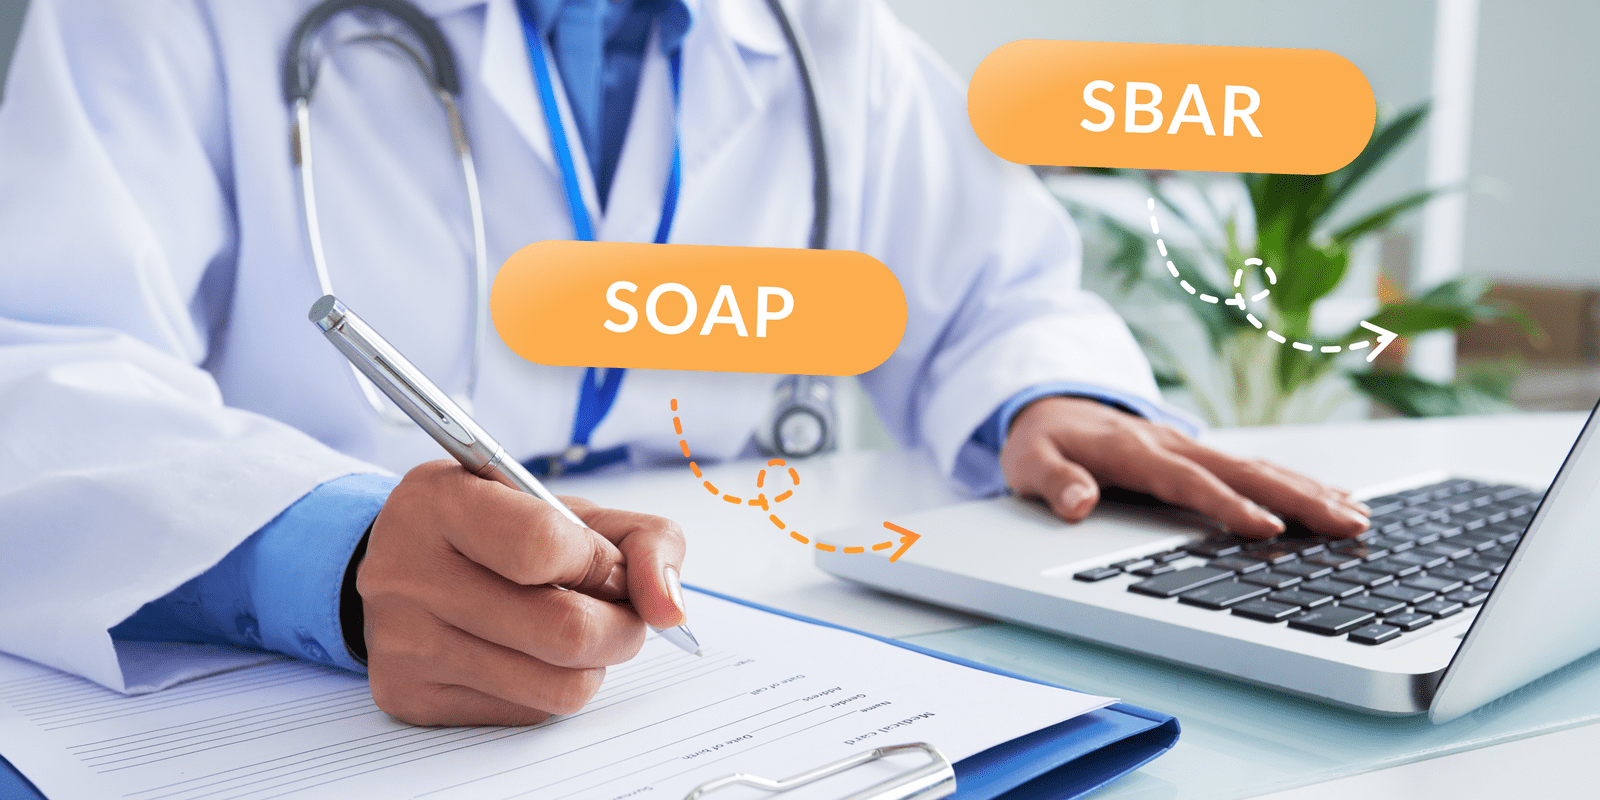 perbedaan rekam medis SOAP dan SBAR